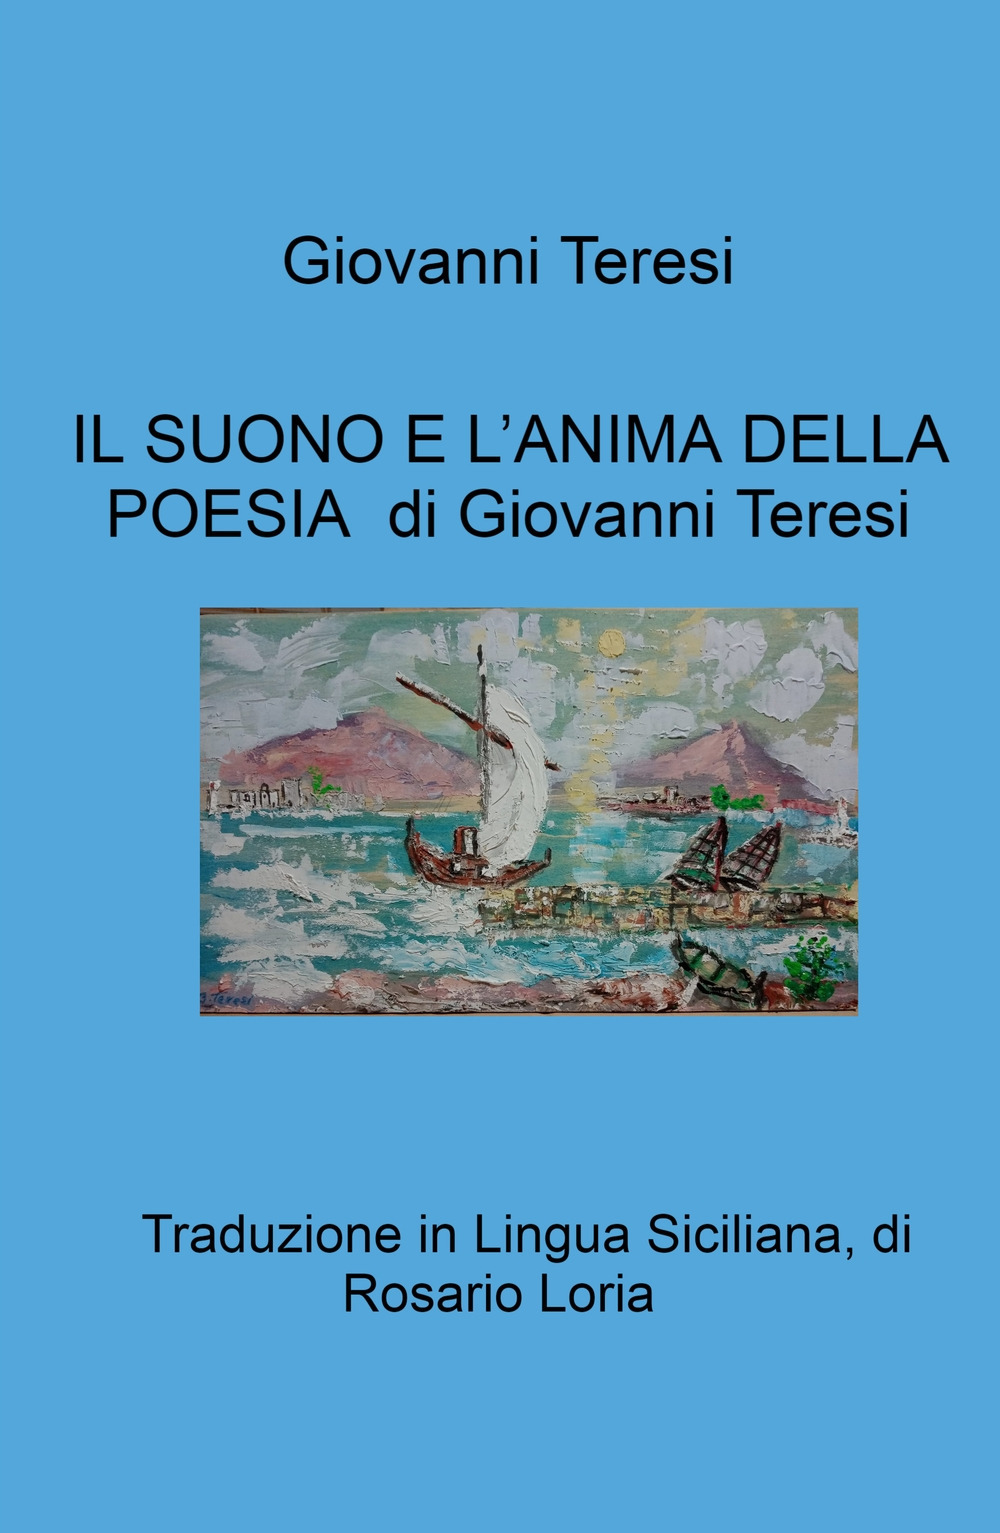 Il suono e l'anima della poesia di Giovanni Teresi. Traduzione in Lingua Siciliana, di Rosario Loria